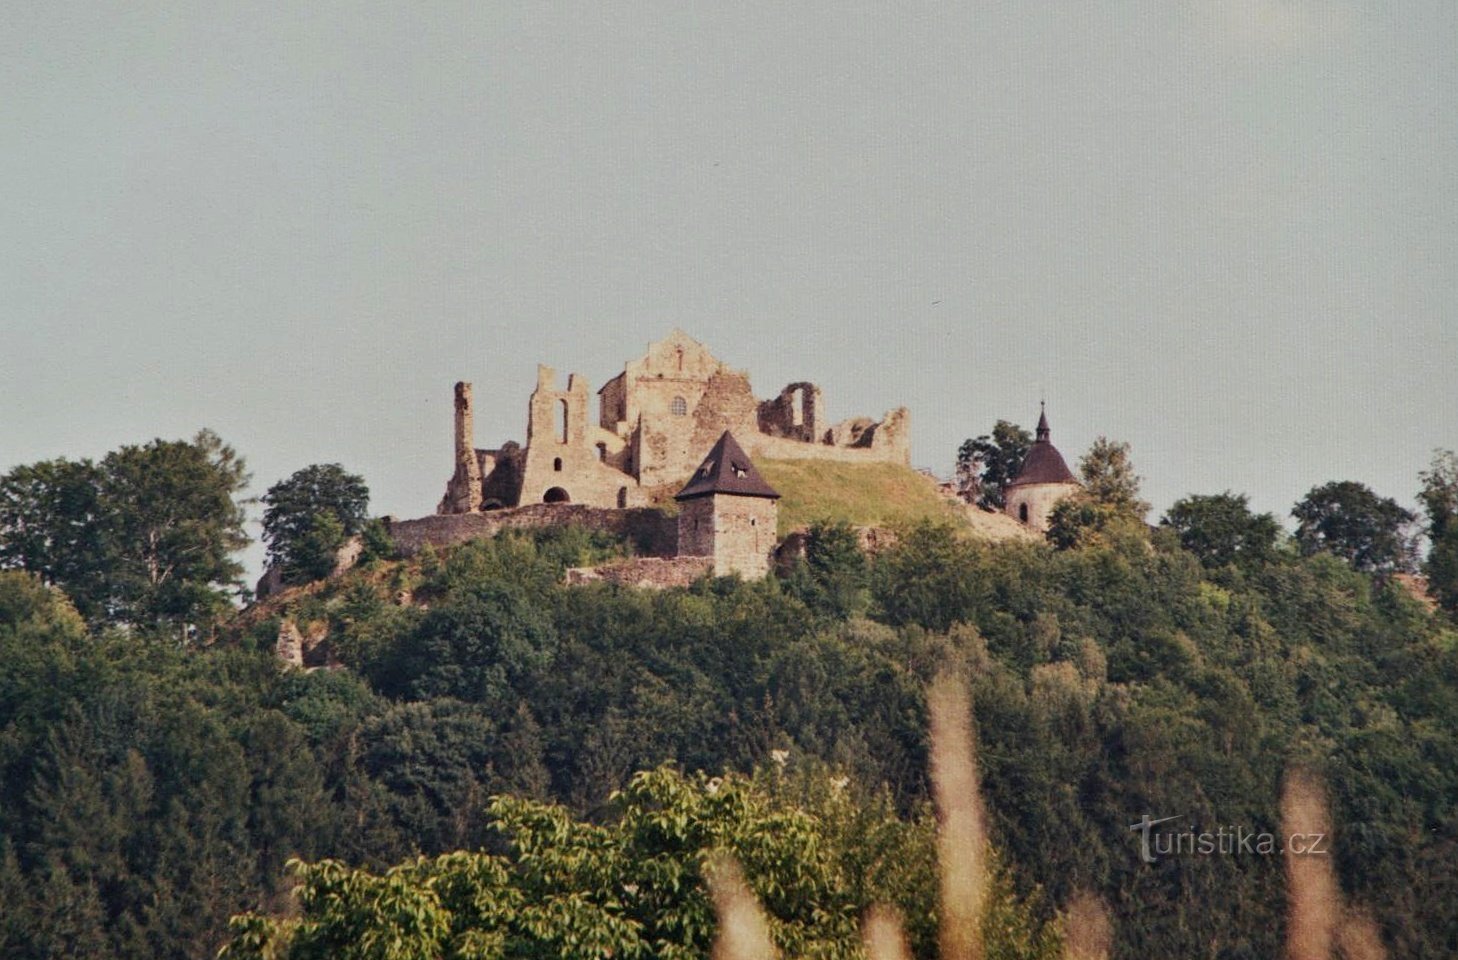 Ερείπια κάστρου Potštejn